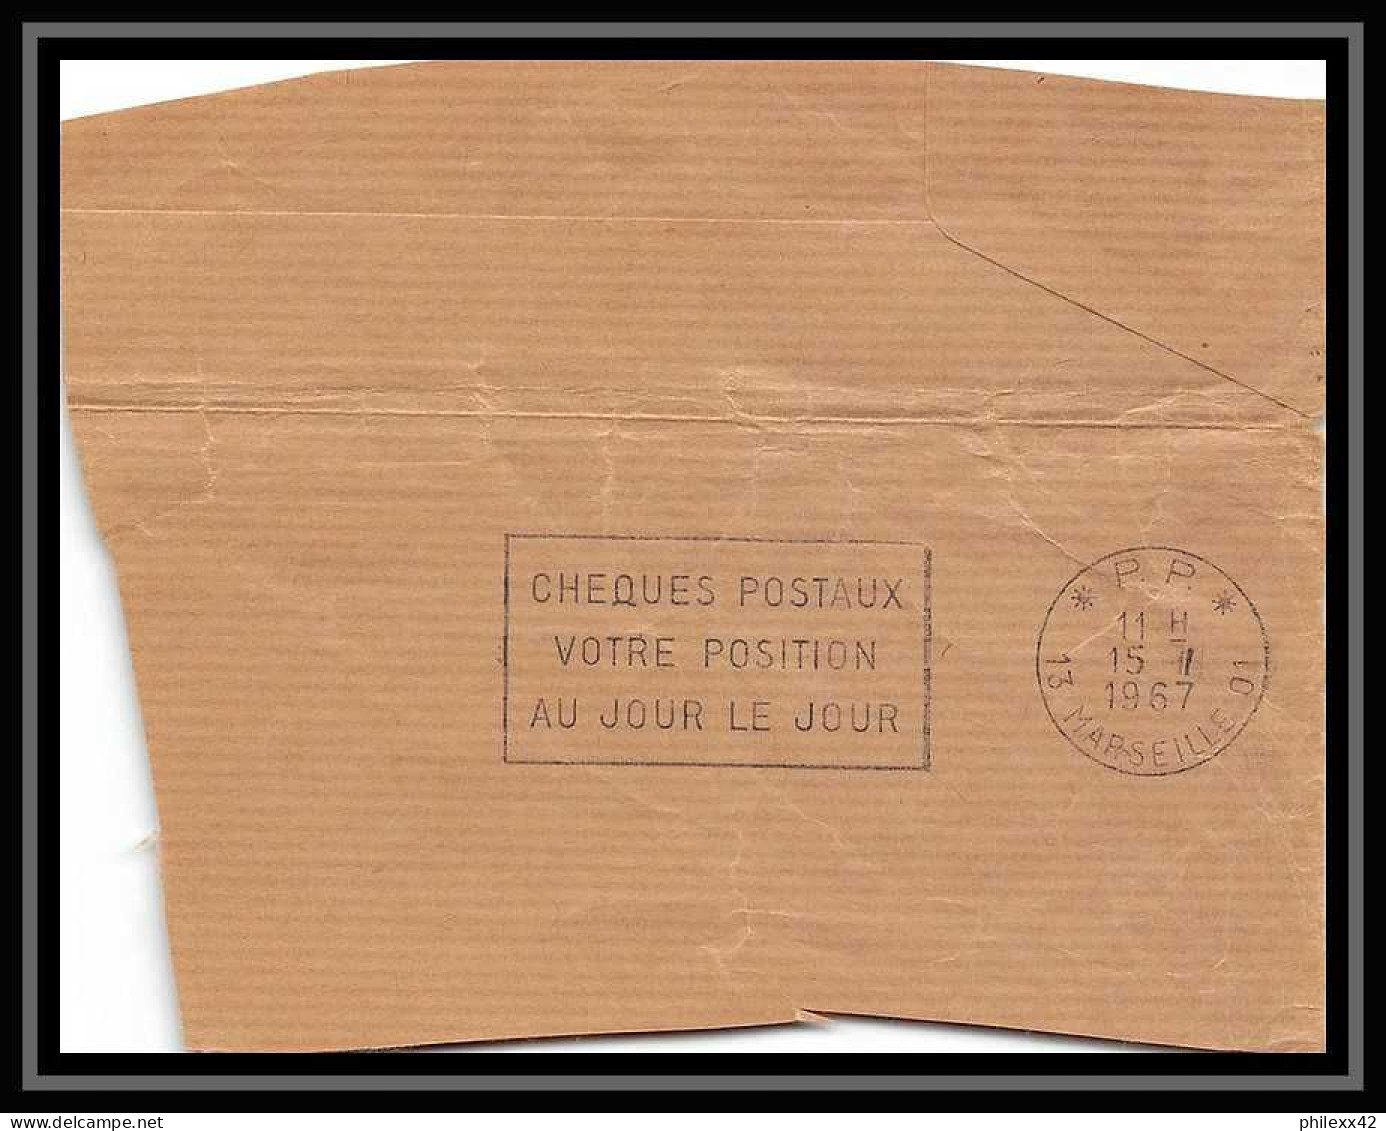 115737 LOT DE + DE 29 Lettres cover Bouches du rhone Marseille Flier secap guerre 1939/1945 affranchissements mécaniques